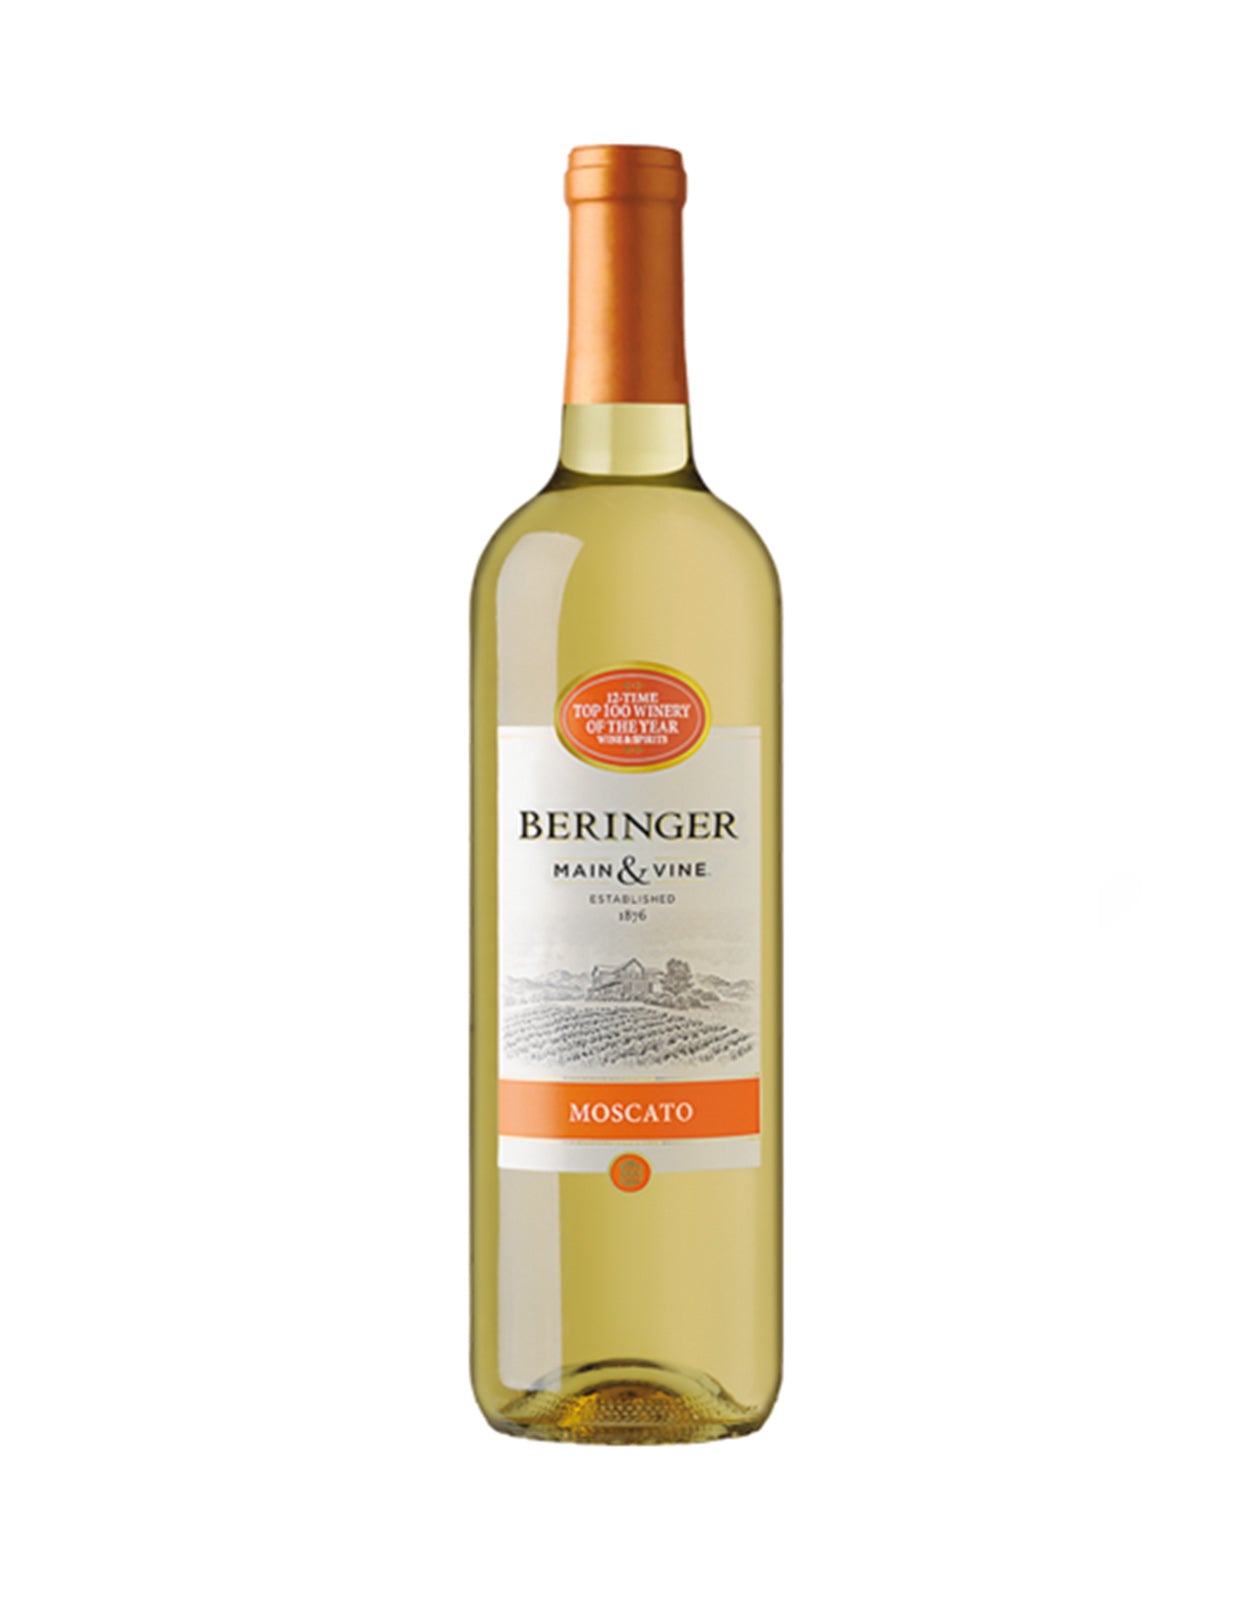 Beringer Moscato Main & Vine - 12 Bottles